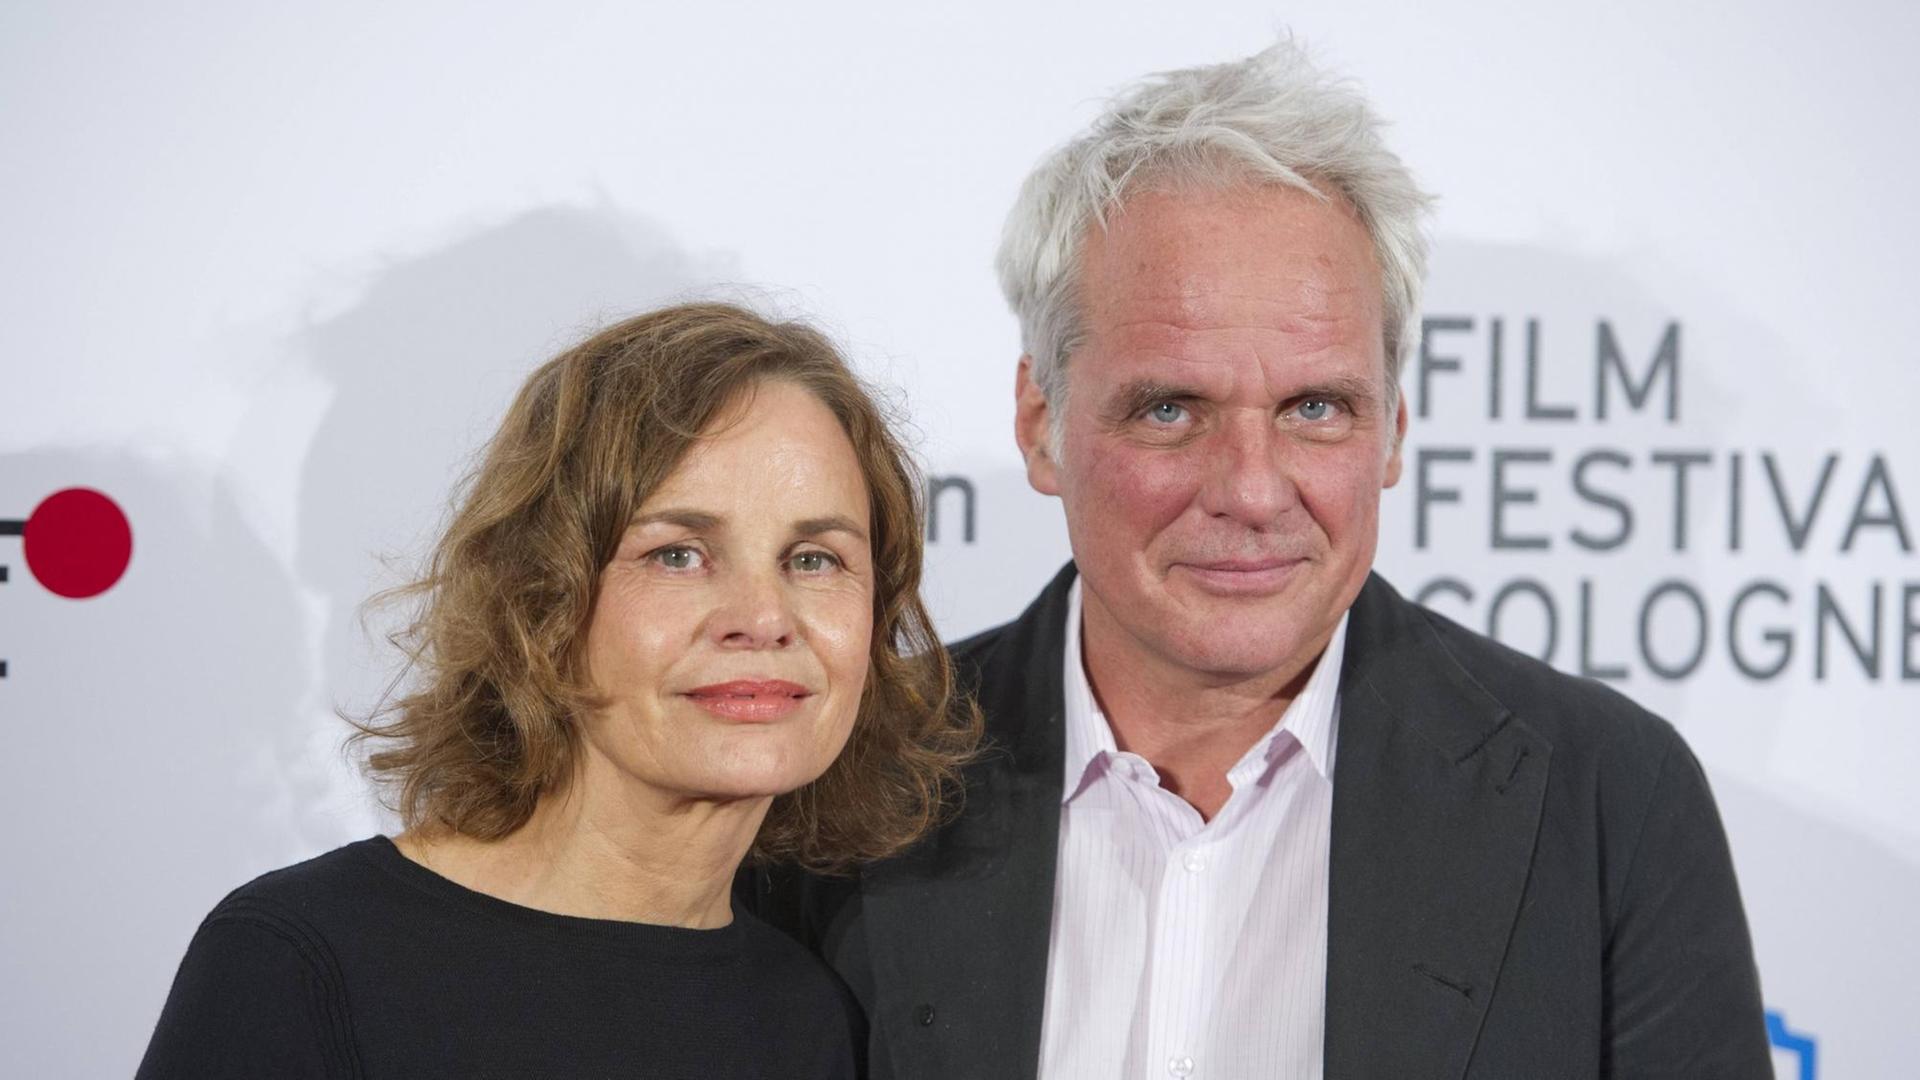 Filmemacherin Corinna Belz mit Produzenten Thomas Kufus auf dem roten Teppich, Film Festival Cologne, 06.10.2017